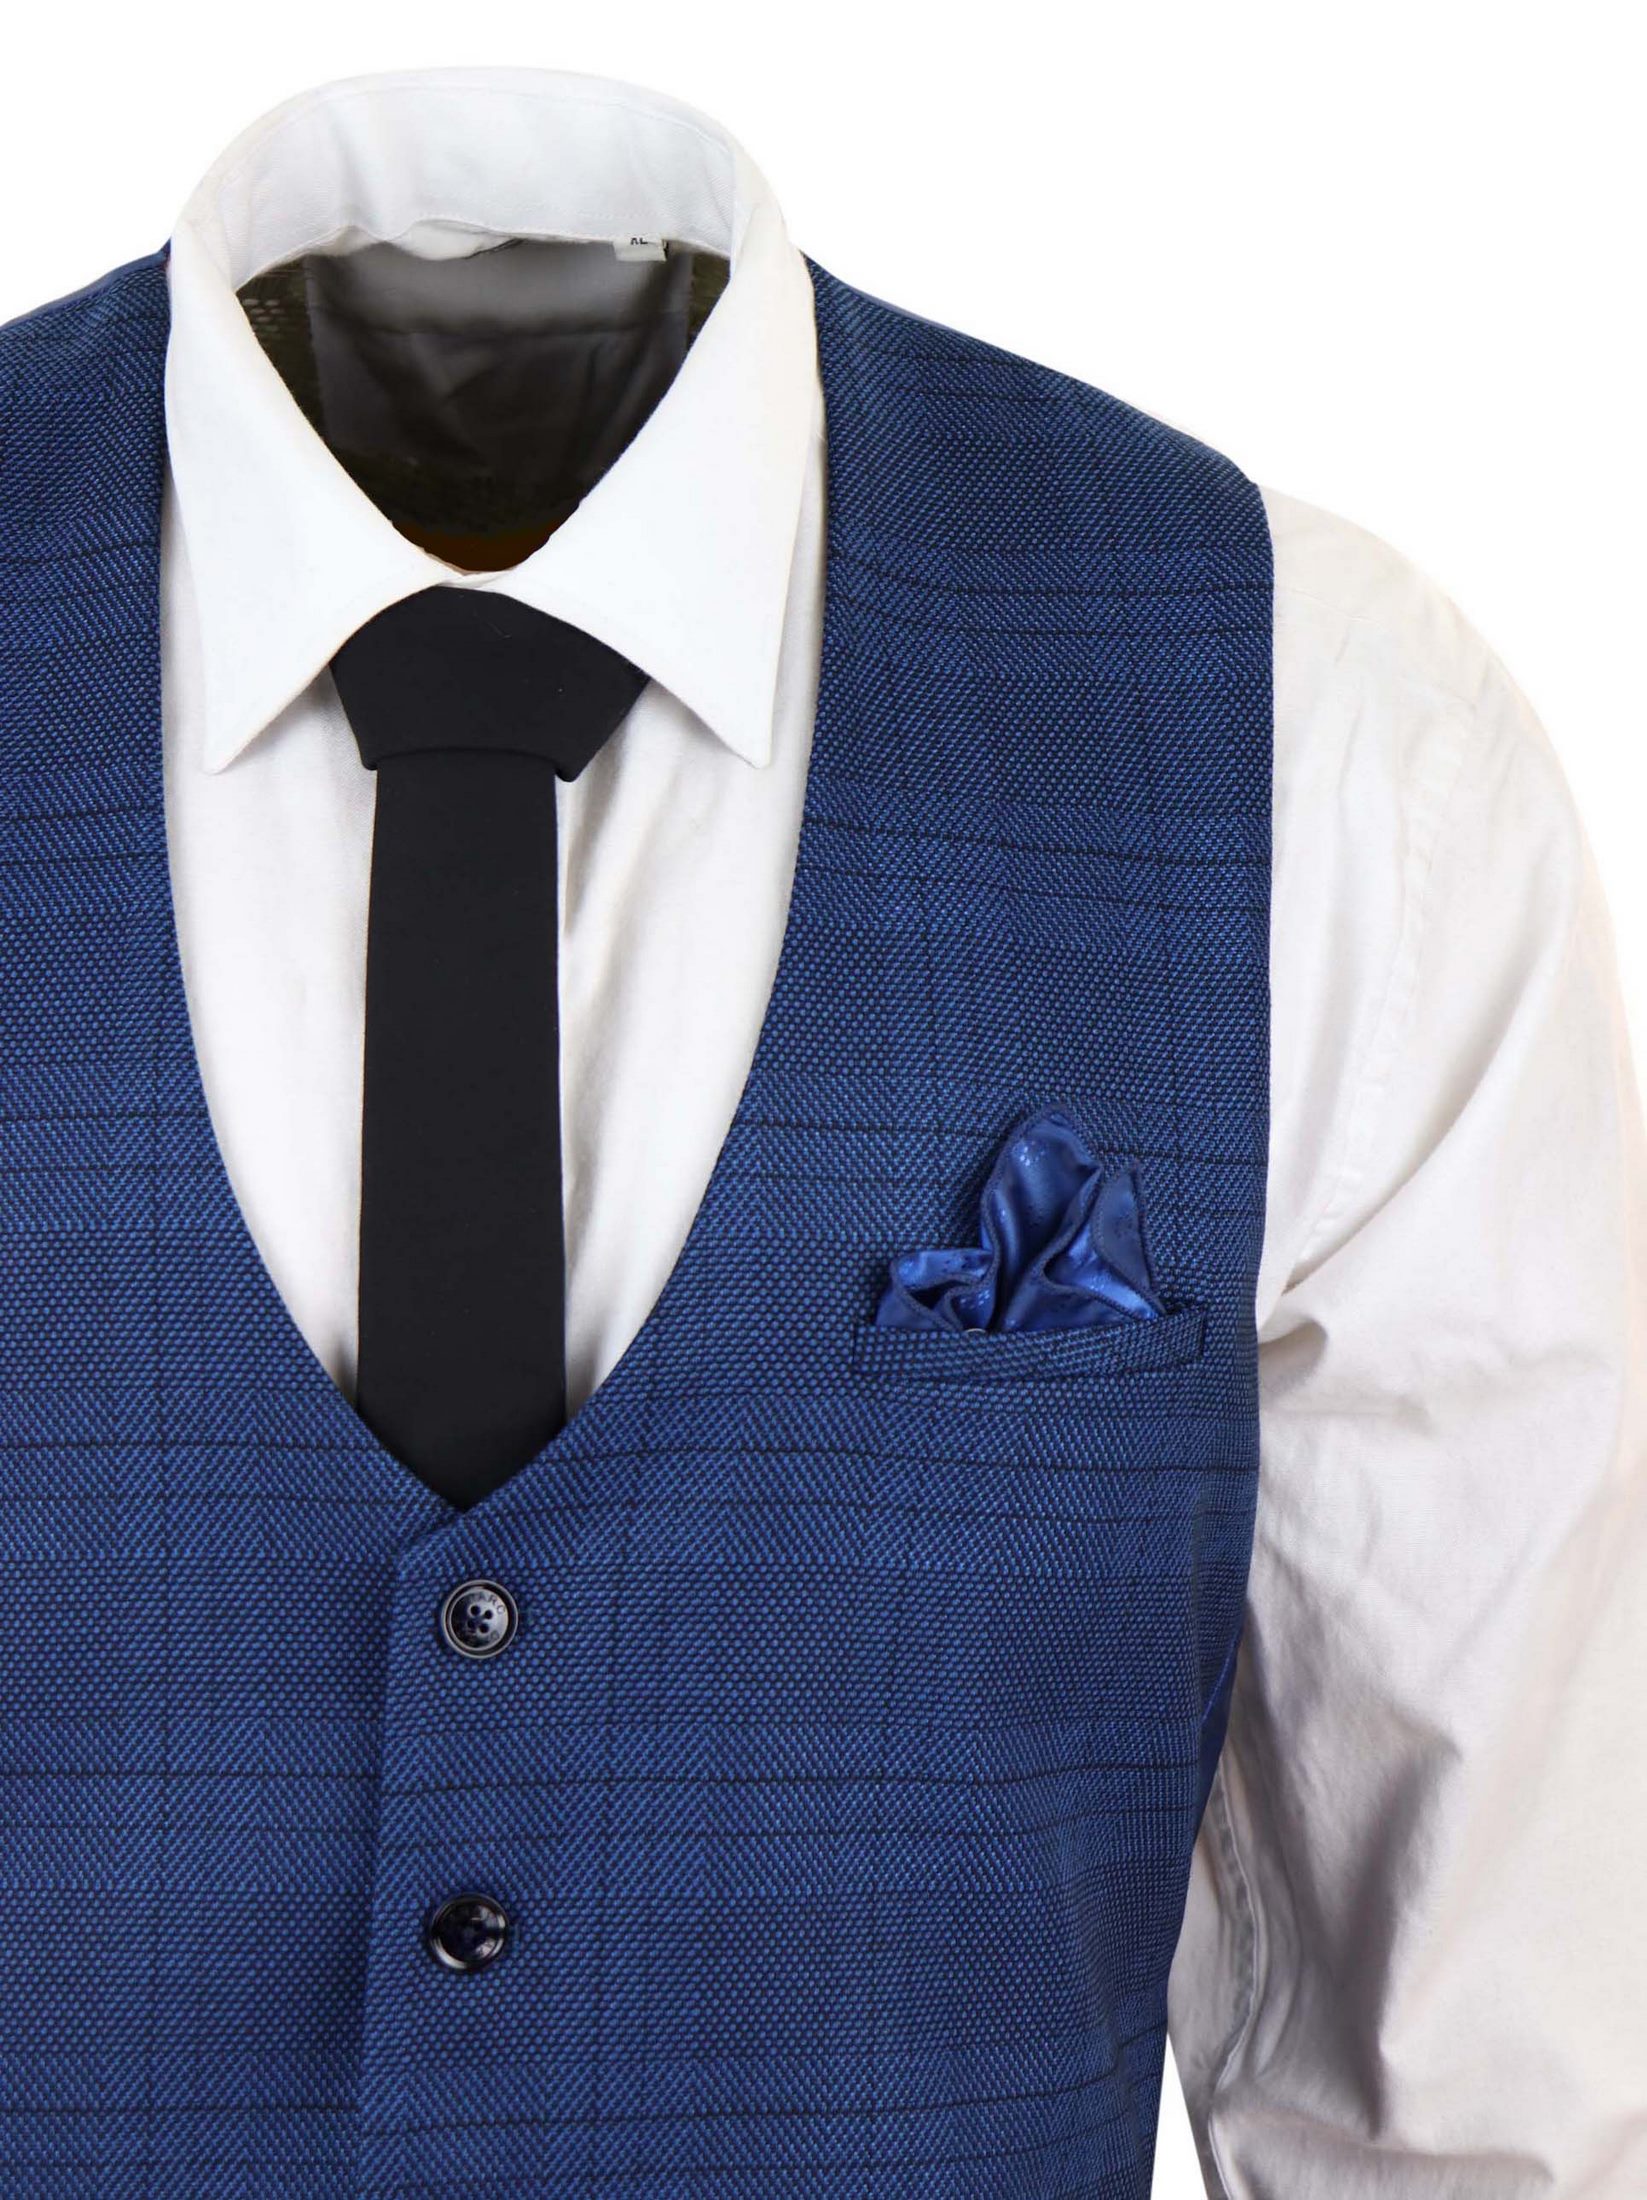 Marc Darcy Jerry - Blue 3 Piece Check Suit: Buy Online - Happy Gentleman